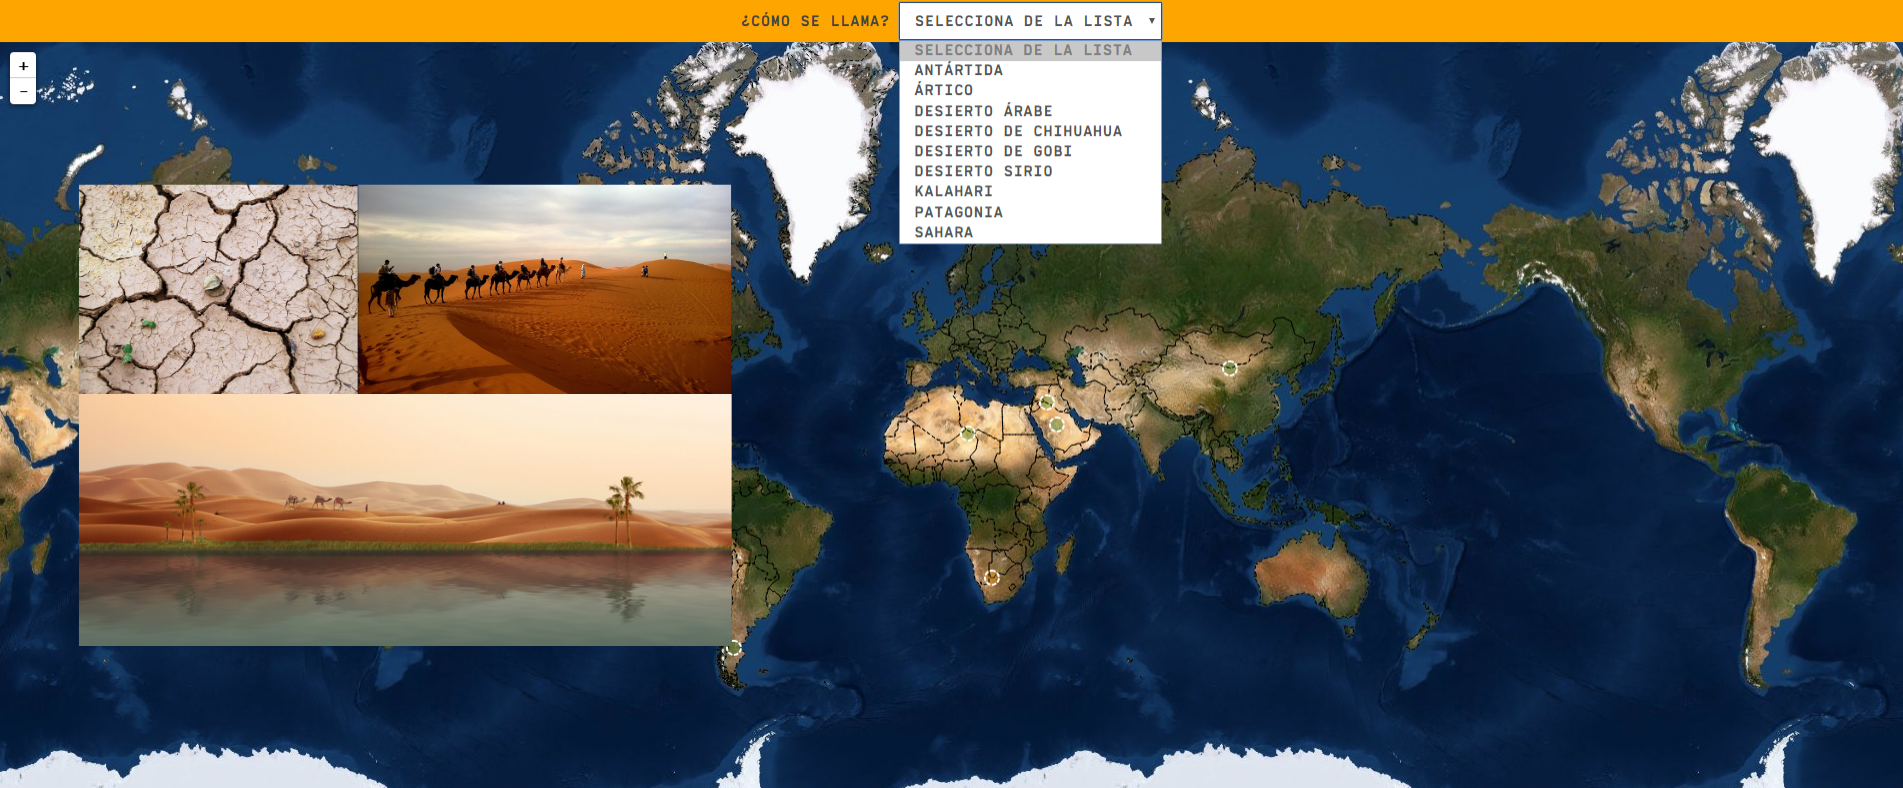 Desertos do mundo - Nível médio